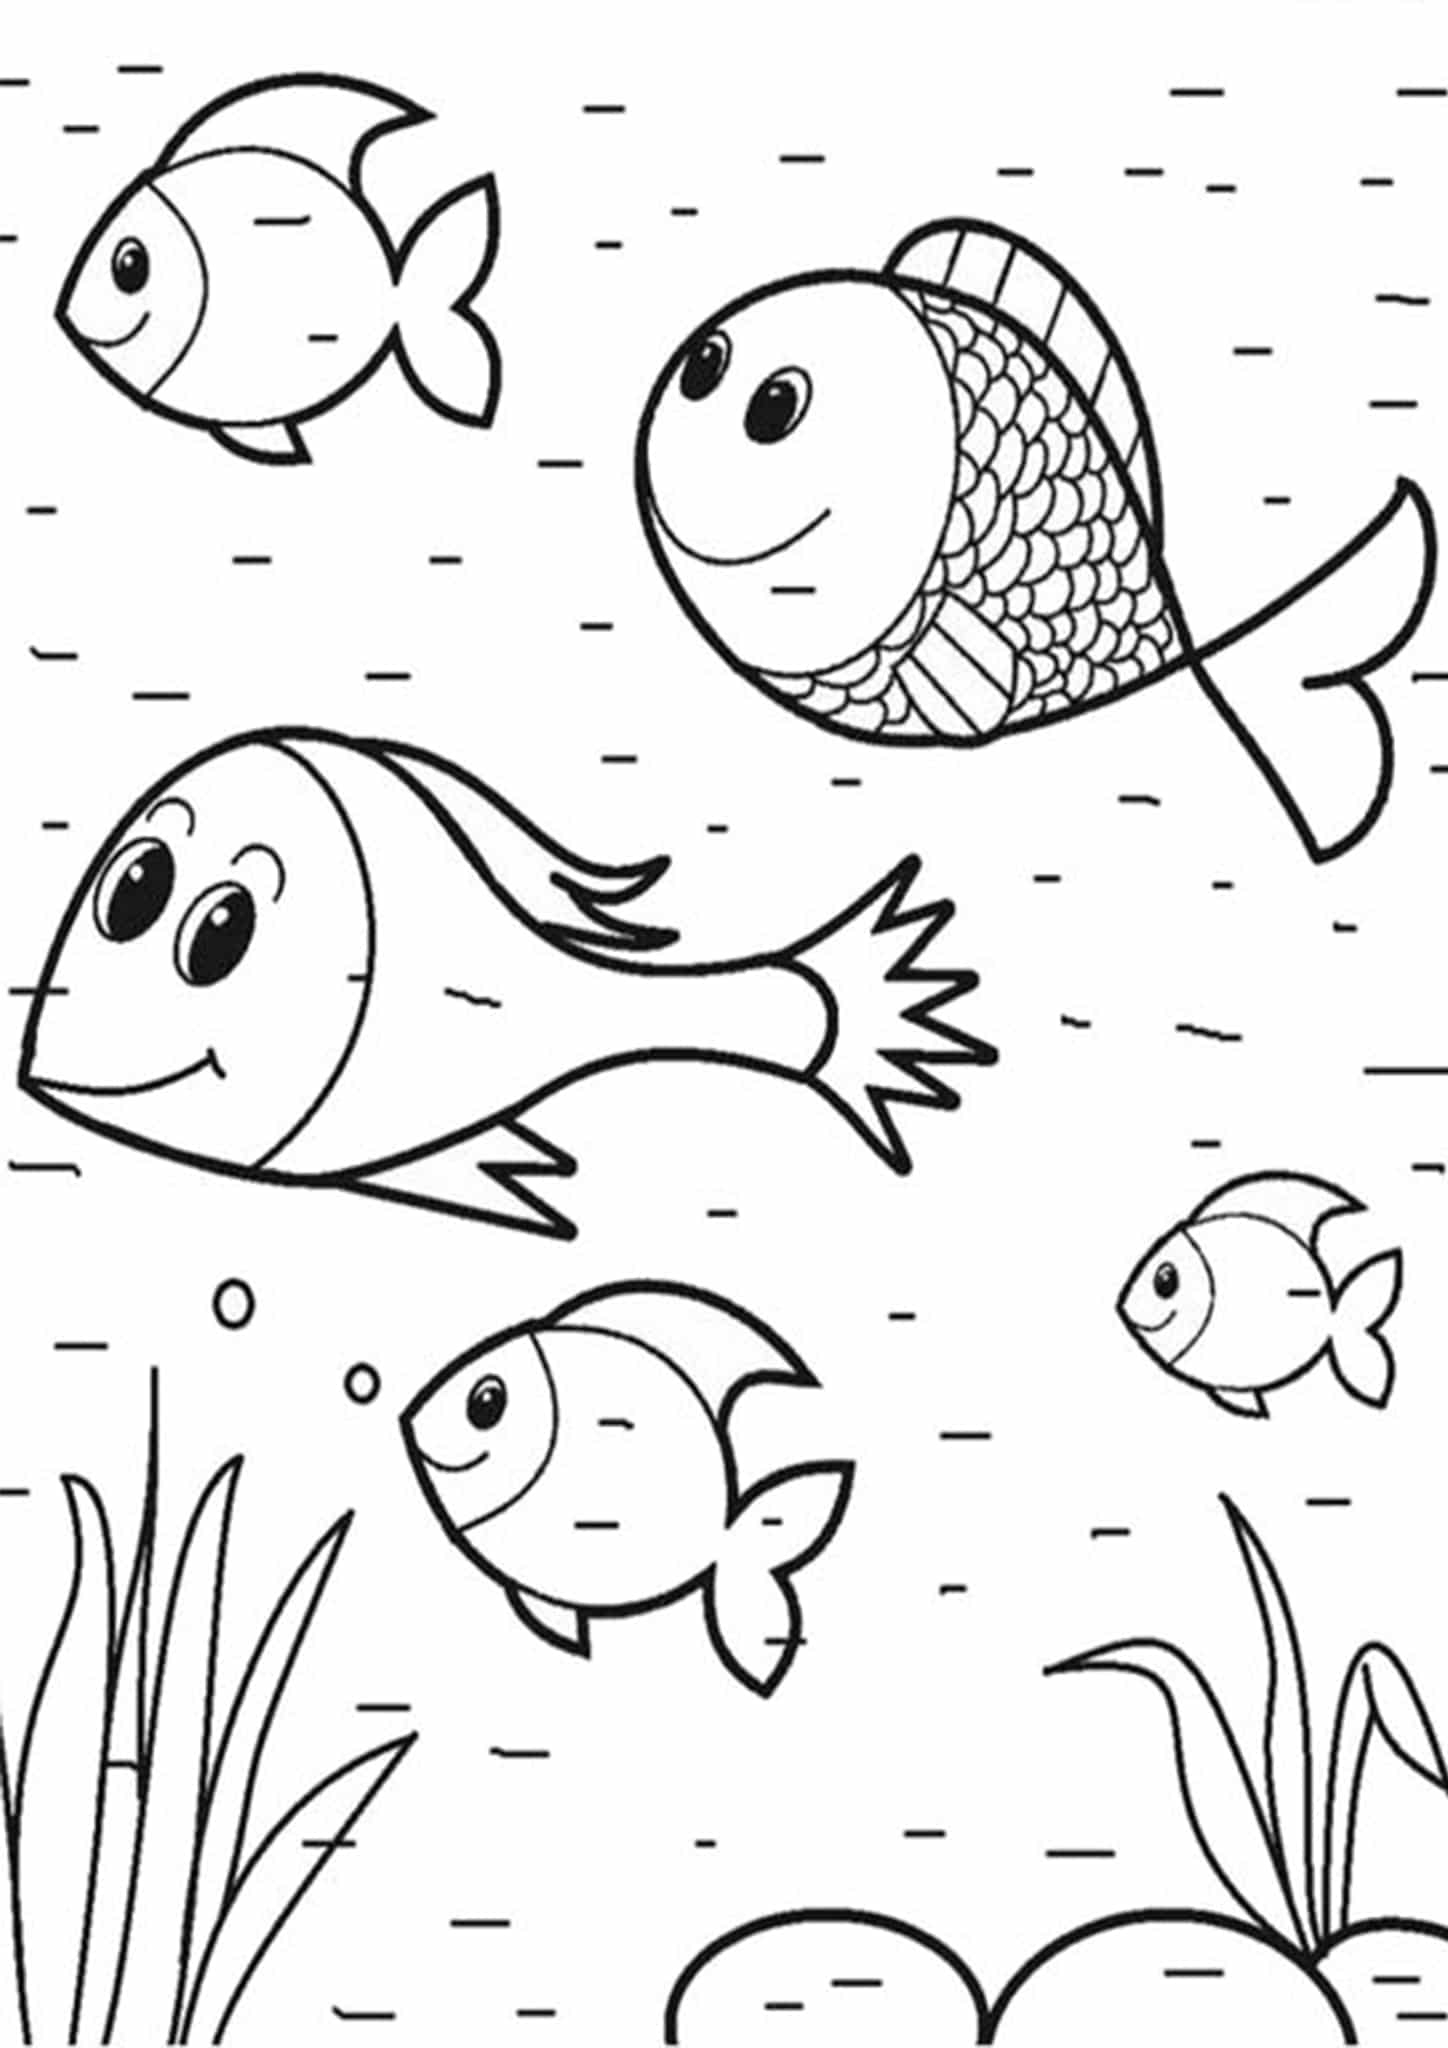 Dibujos de Cinco peces de Dibujos Animados para colorear